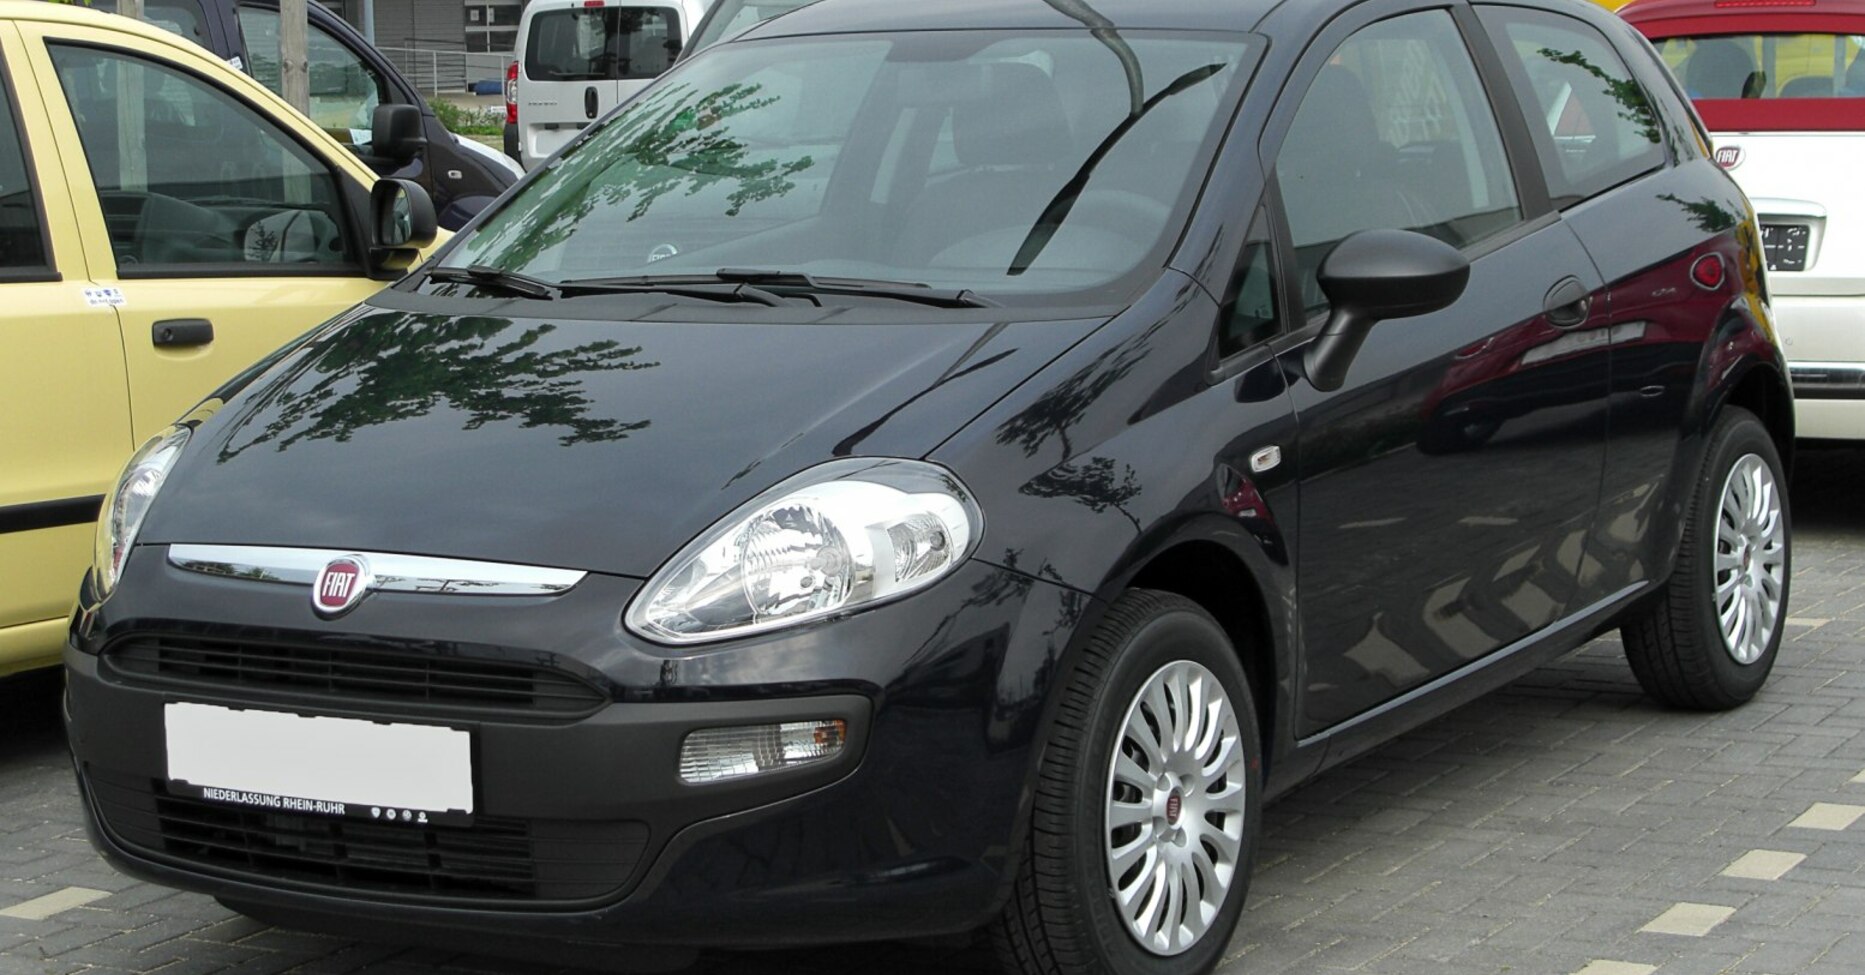 Fiat Punto Evo (199) 1.4 8V (77 Hp) 2009, 2010, 2011 